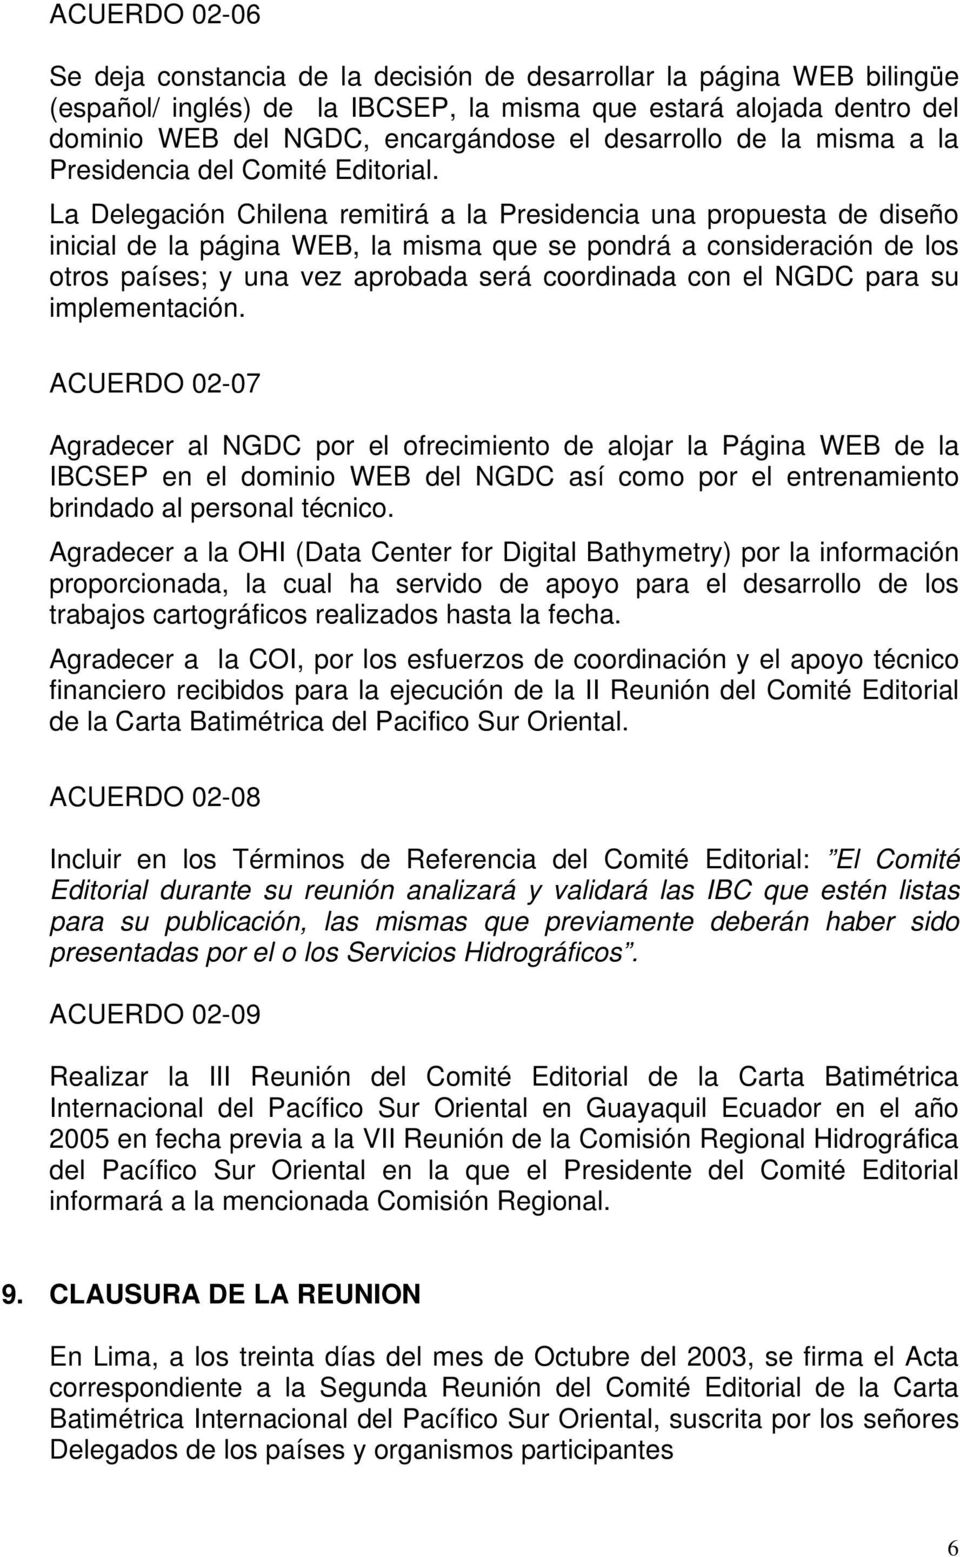 La Delegación Chilena remitirá a la Presidencia una propuesta de diseño inicial de la página WEB, la misma que se pondrá a consideración de los otros países; y una vez aprobada será coordinada con el